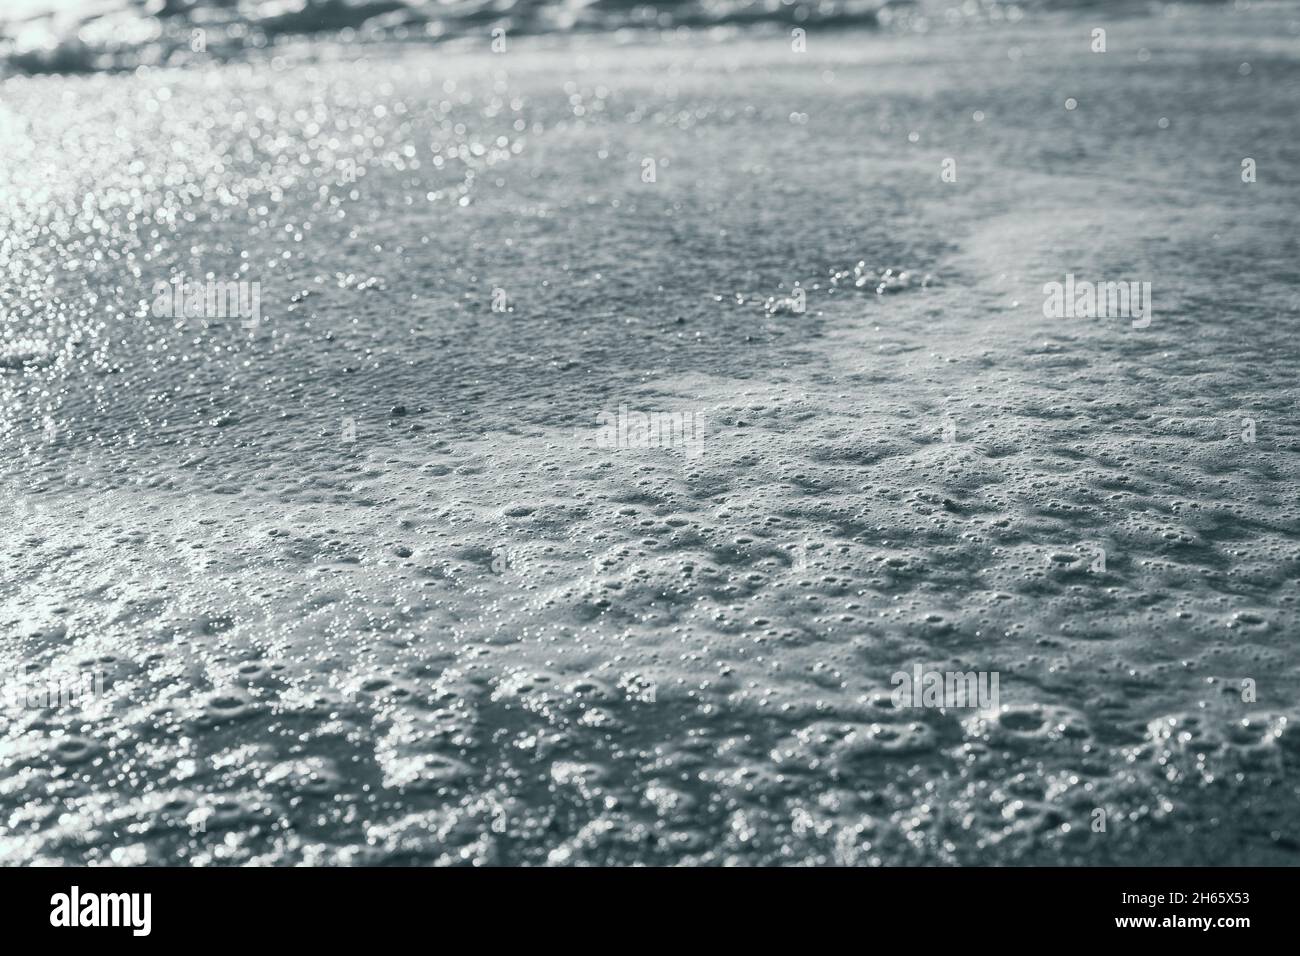 Nahaufnahme von Schaum am Meeresufer mit Sonnenreflexion auf dem Wasser. Abstraktes Hintergrundkonzept. Schwarzweiß-Fotografie Stockfoto